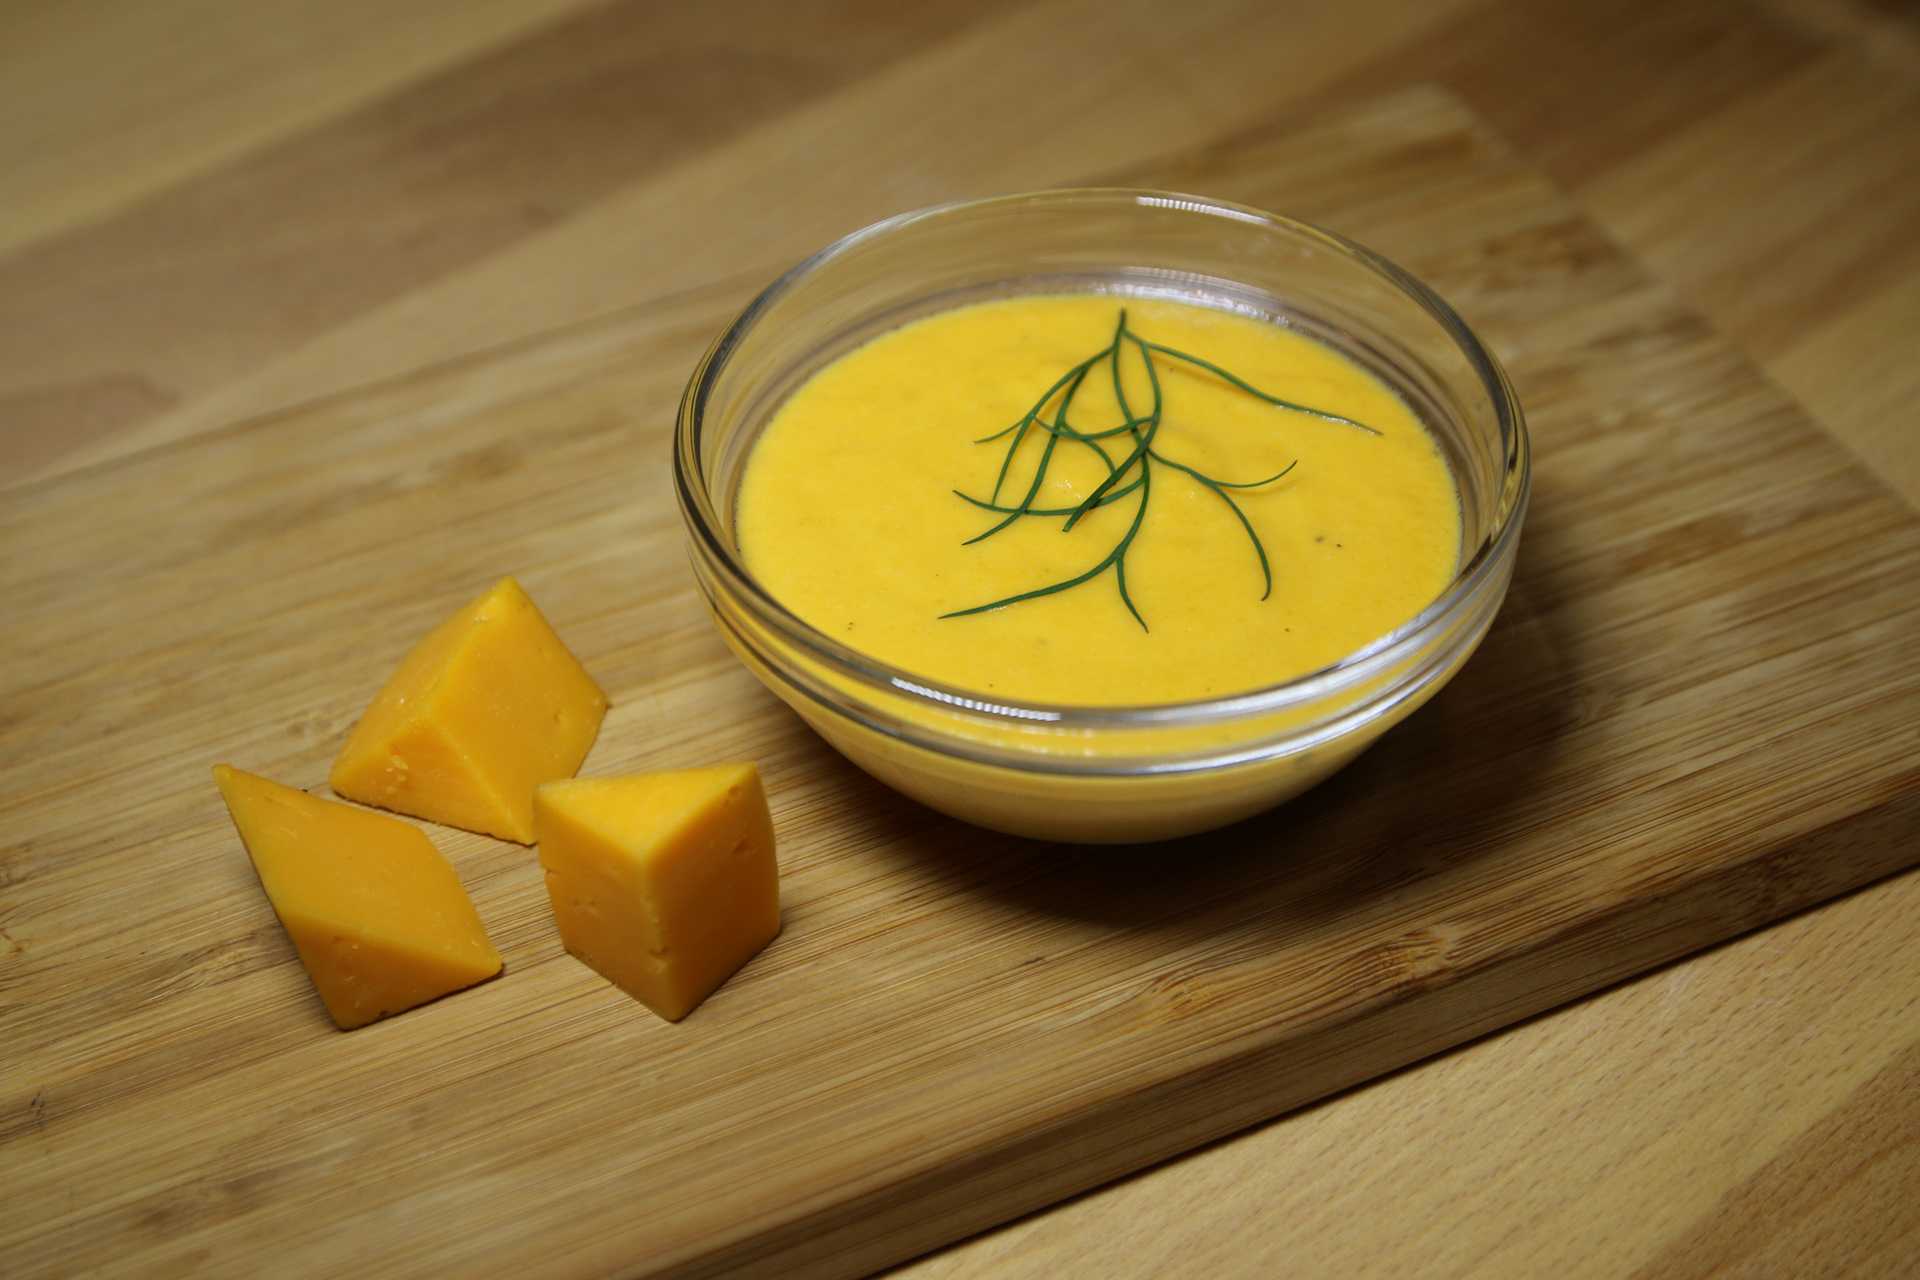 Макароны с сырным соусом - залог вкусного и сытного обеда: рецепт с фото